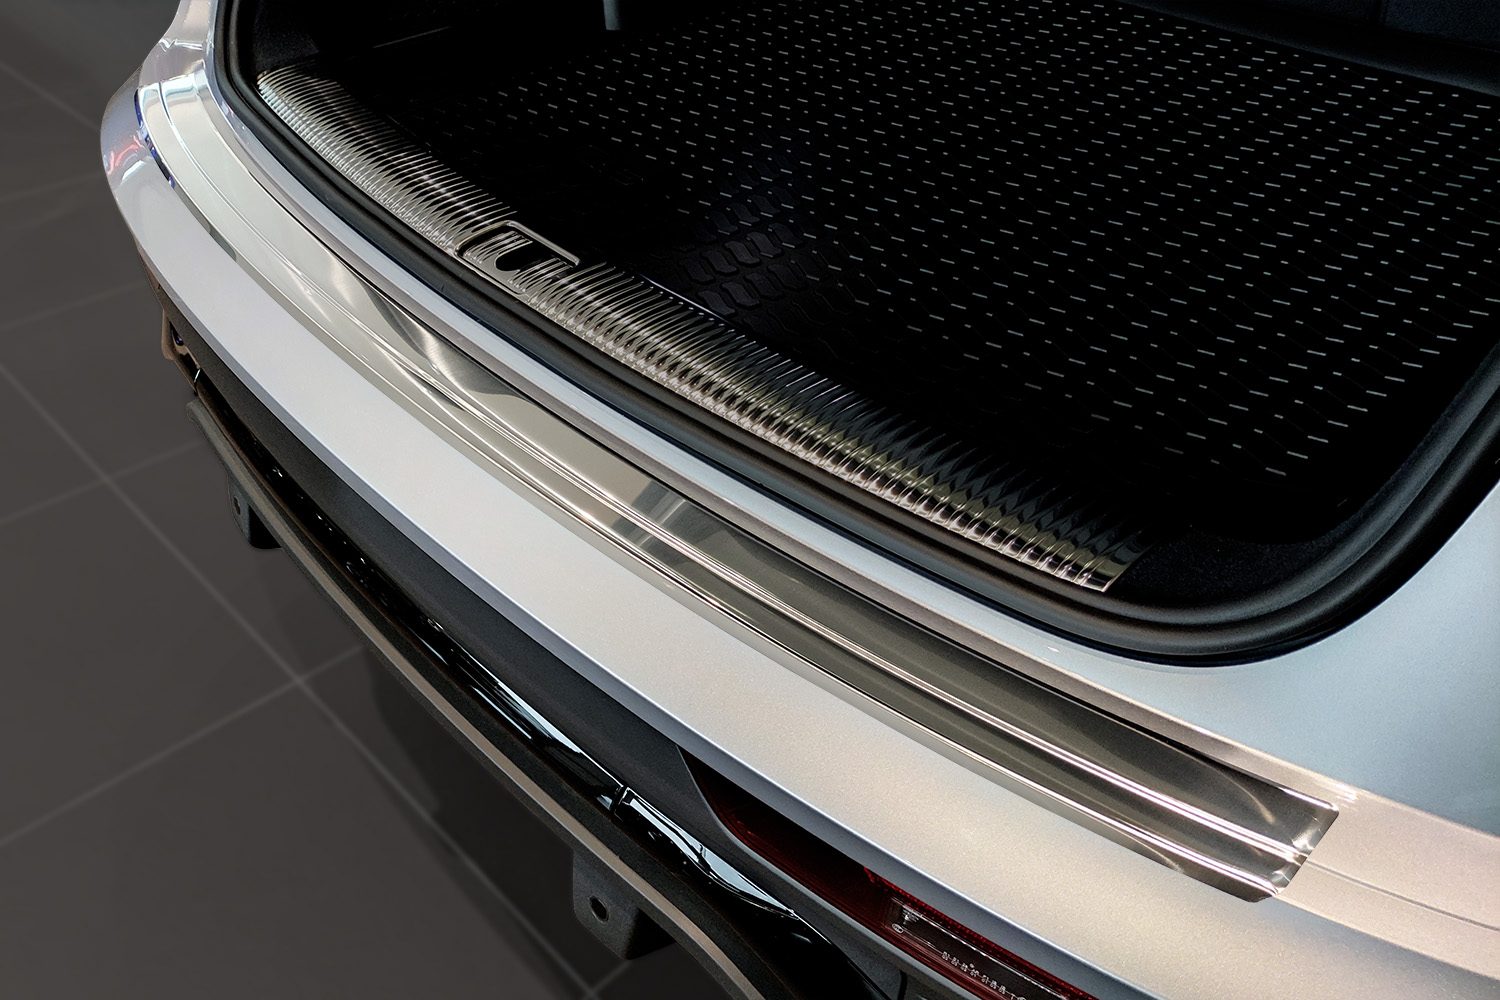 Ladekantenschutz für Audi Q5 SQ5 - Schutz für die Ladekante Ihres Fahrzeuges